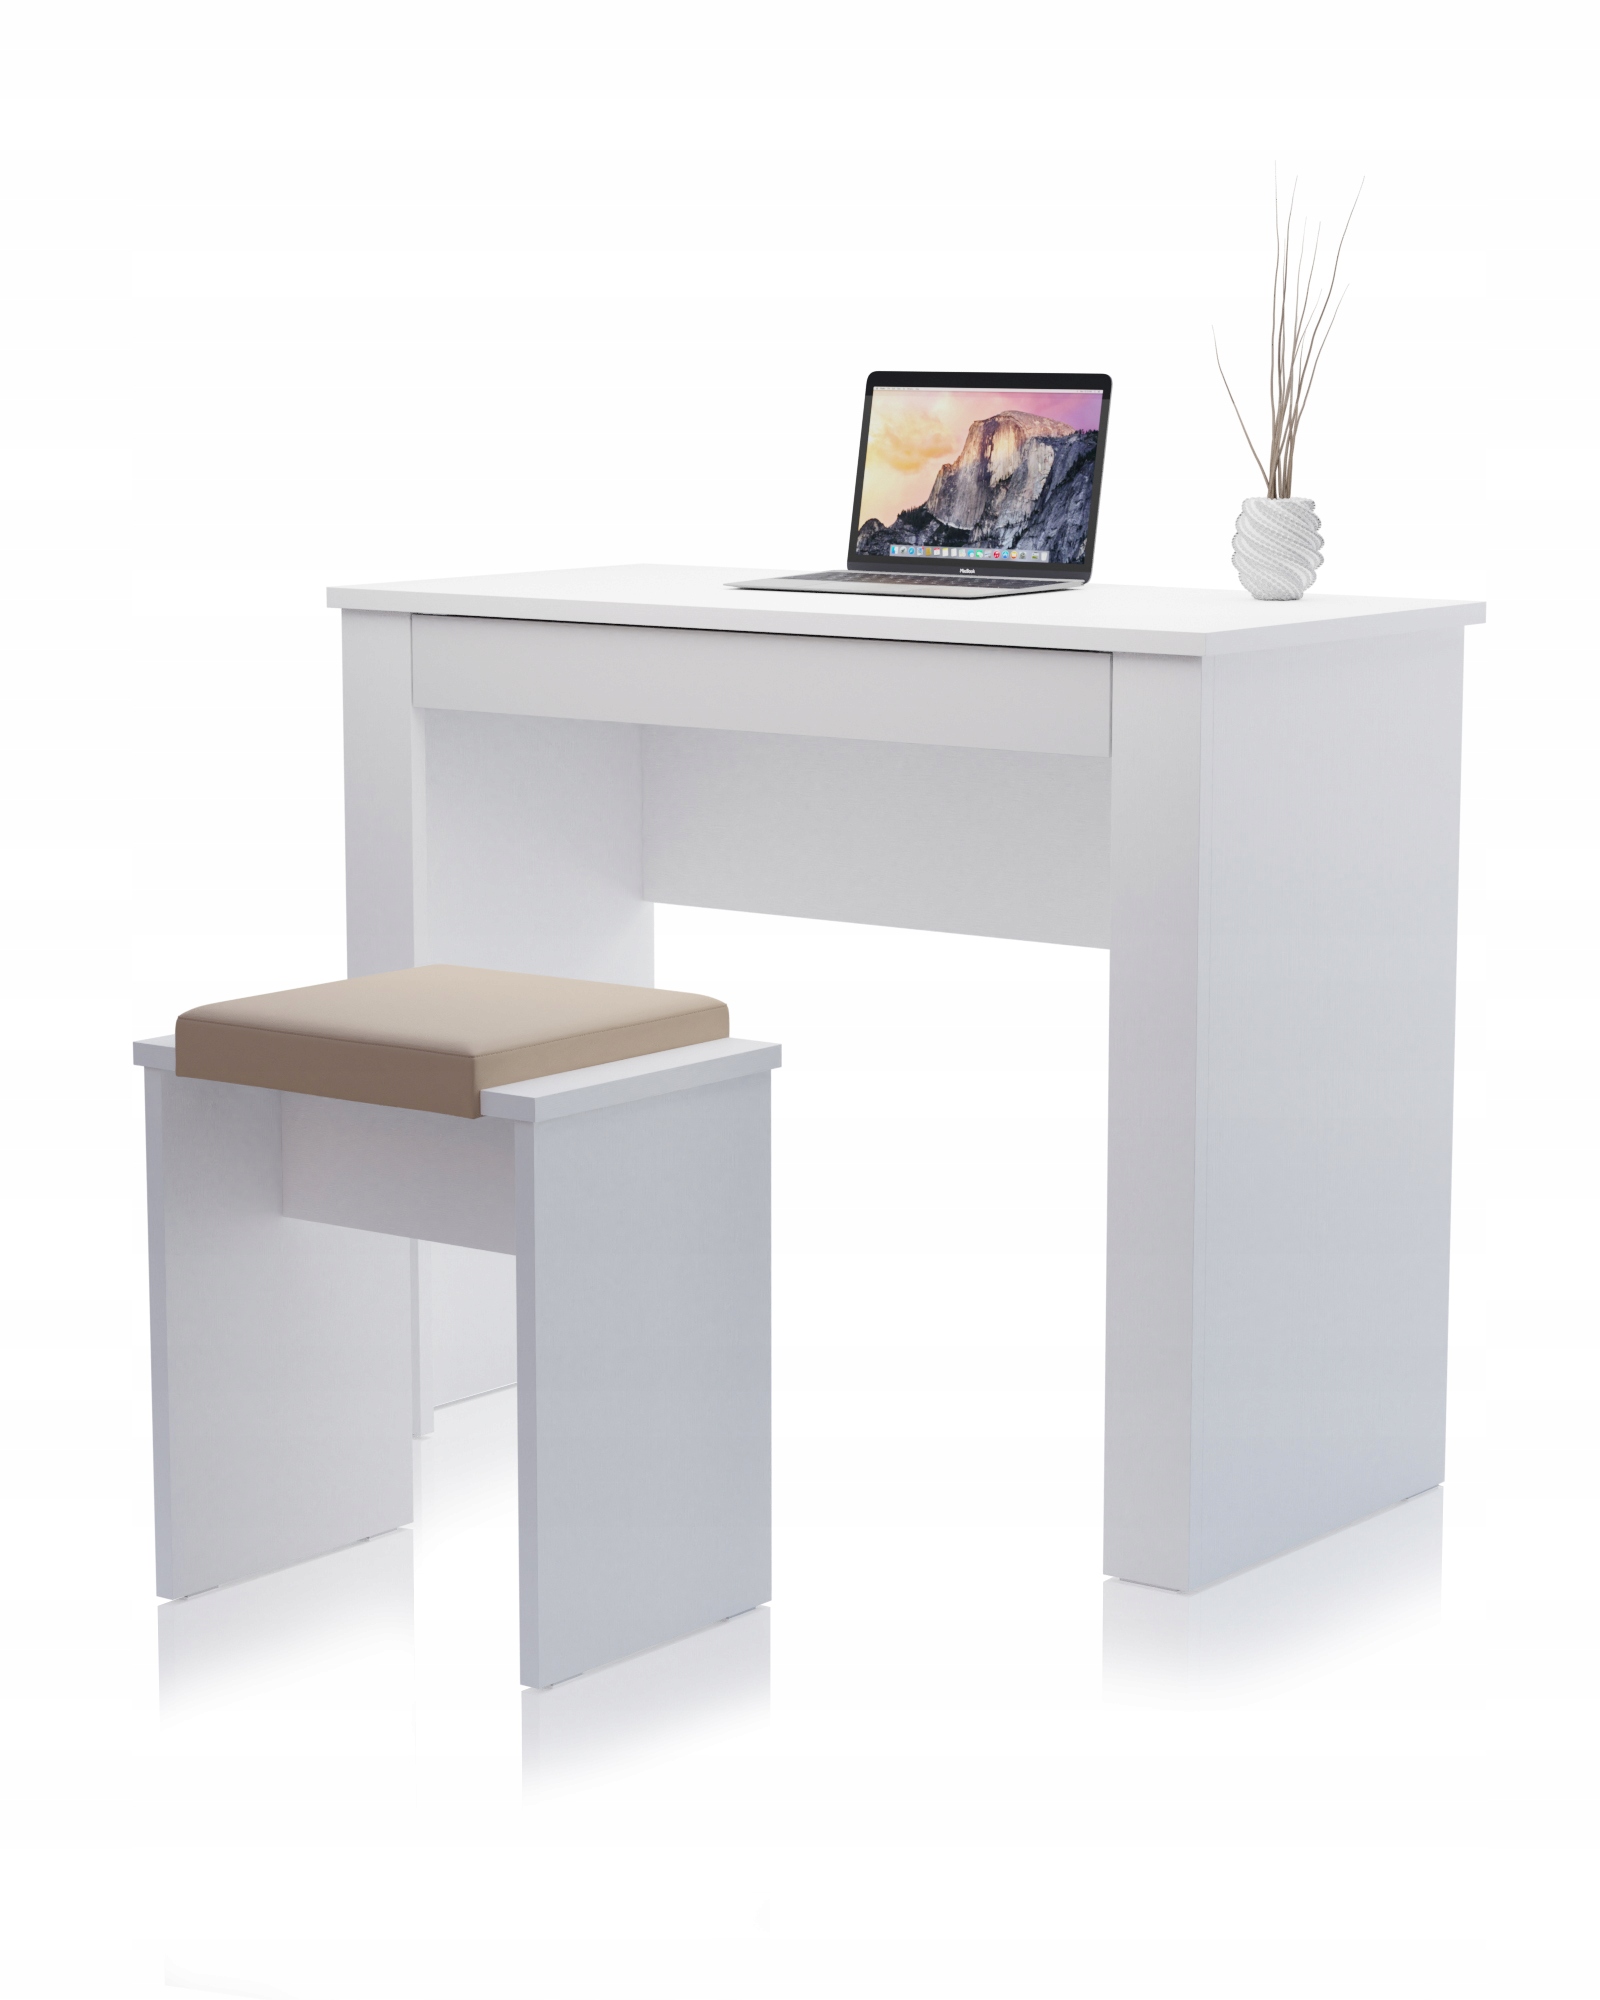 Стілець простий стілець сидіння для туалетного столика Білий висота меблів 48 см